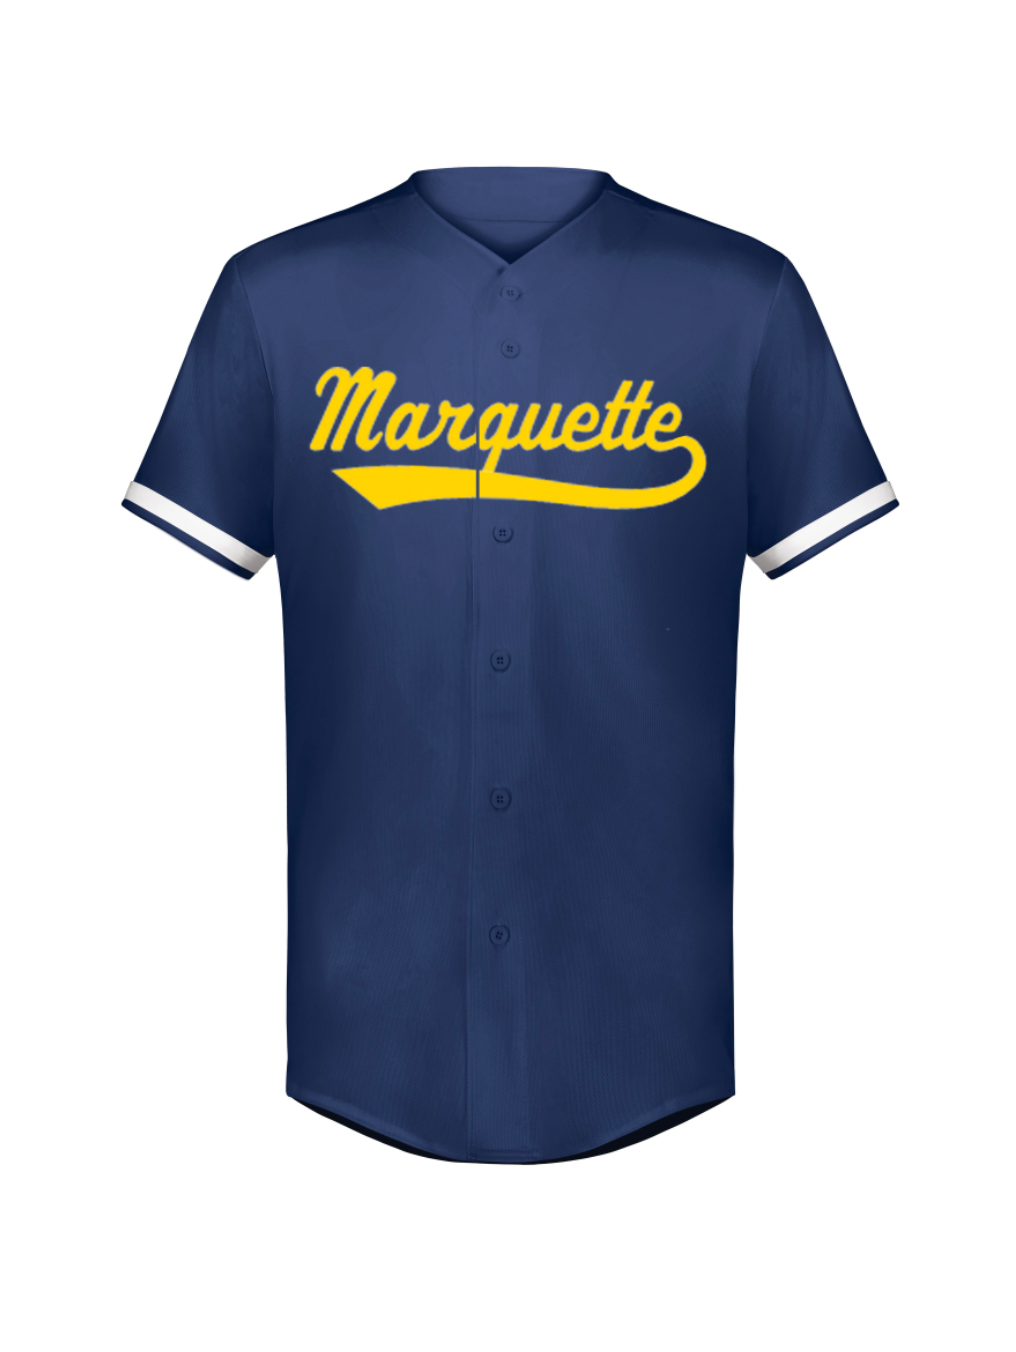 Marquette Retro Baseball Jersey